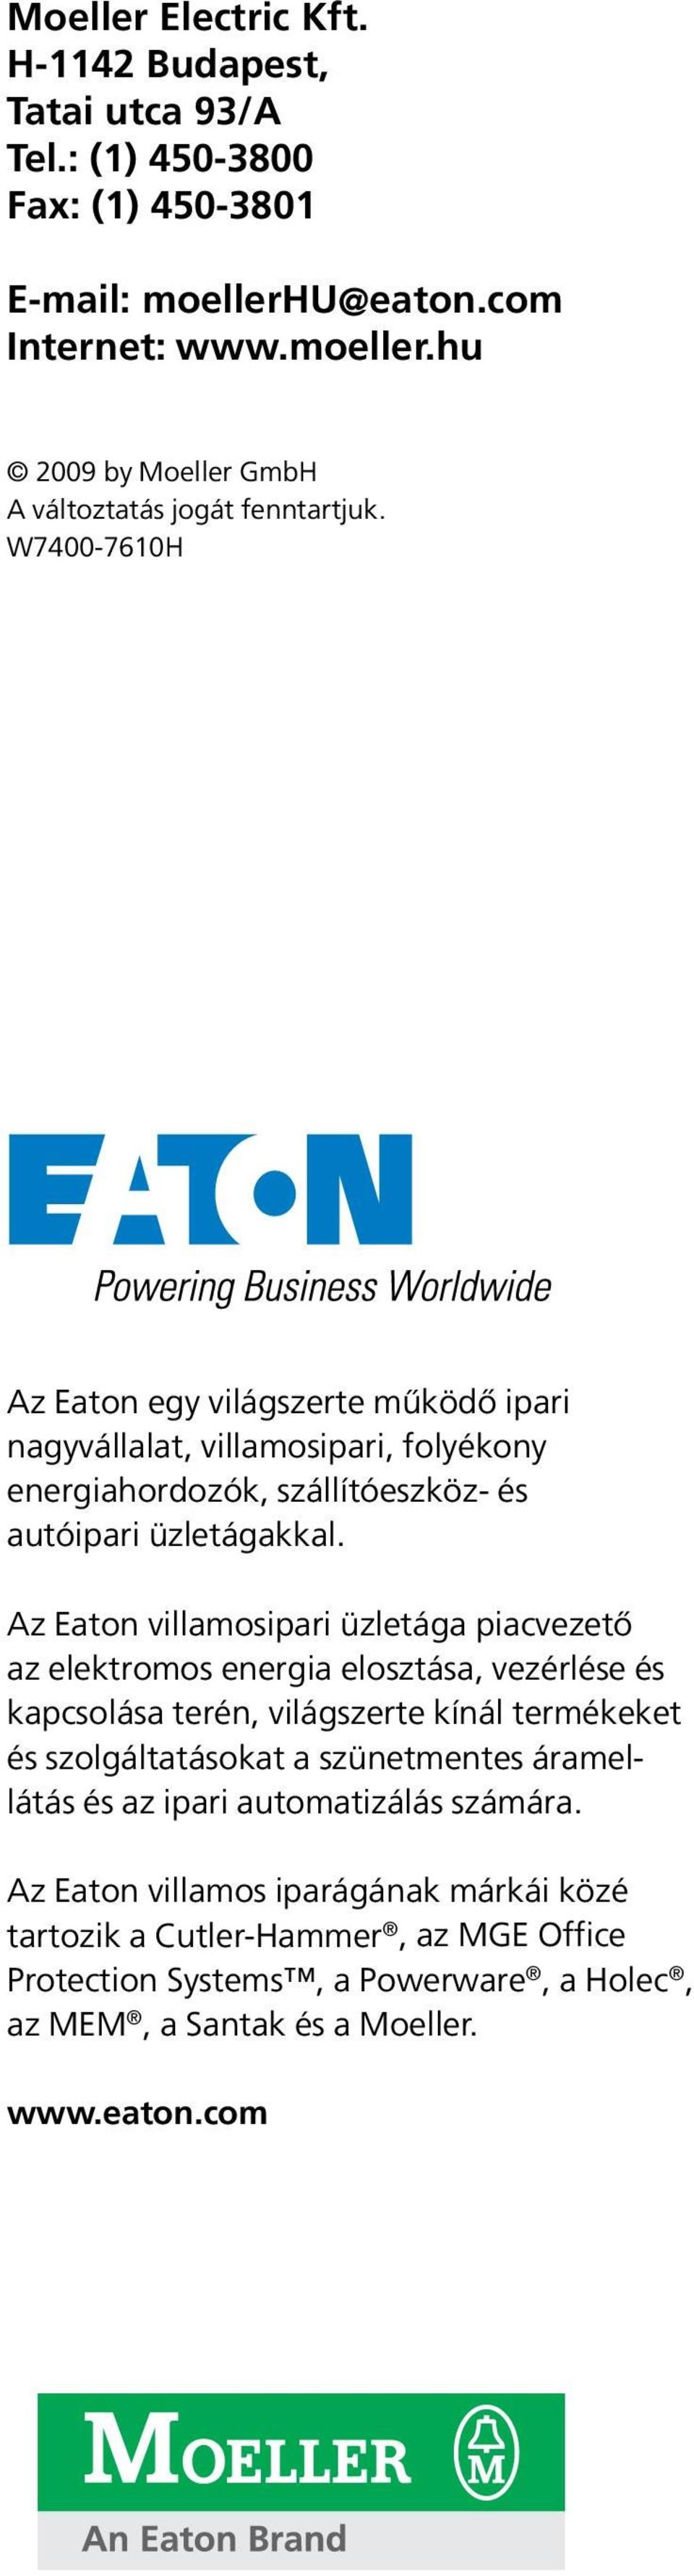 Az Eaton villamosipari üzletága piacvezető az elektromos energia elosztása, vezérlése és kapcsolása terén, világszerte kínál termékeket és szolgáltatásokat a szünetmentes áramellátás